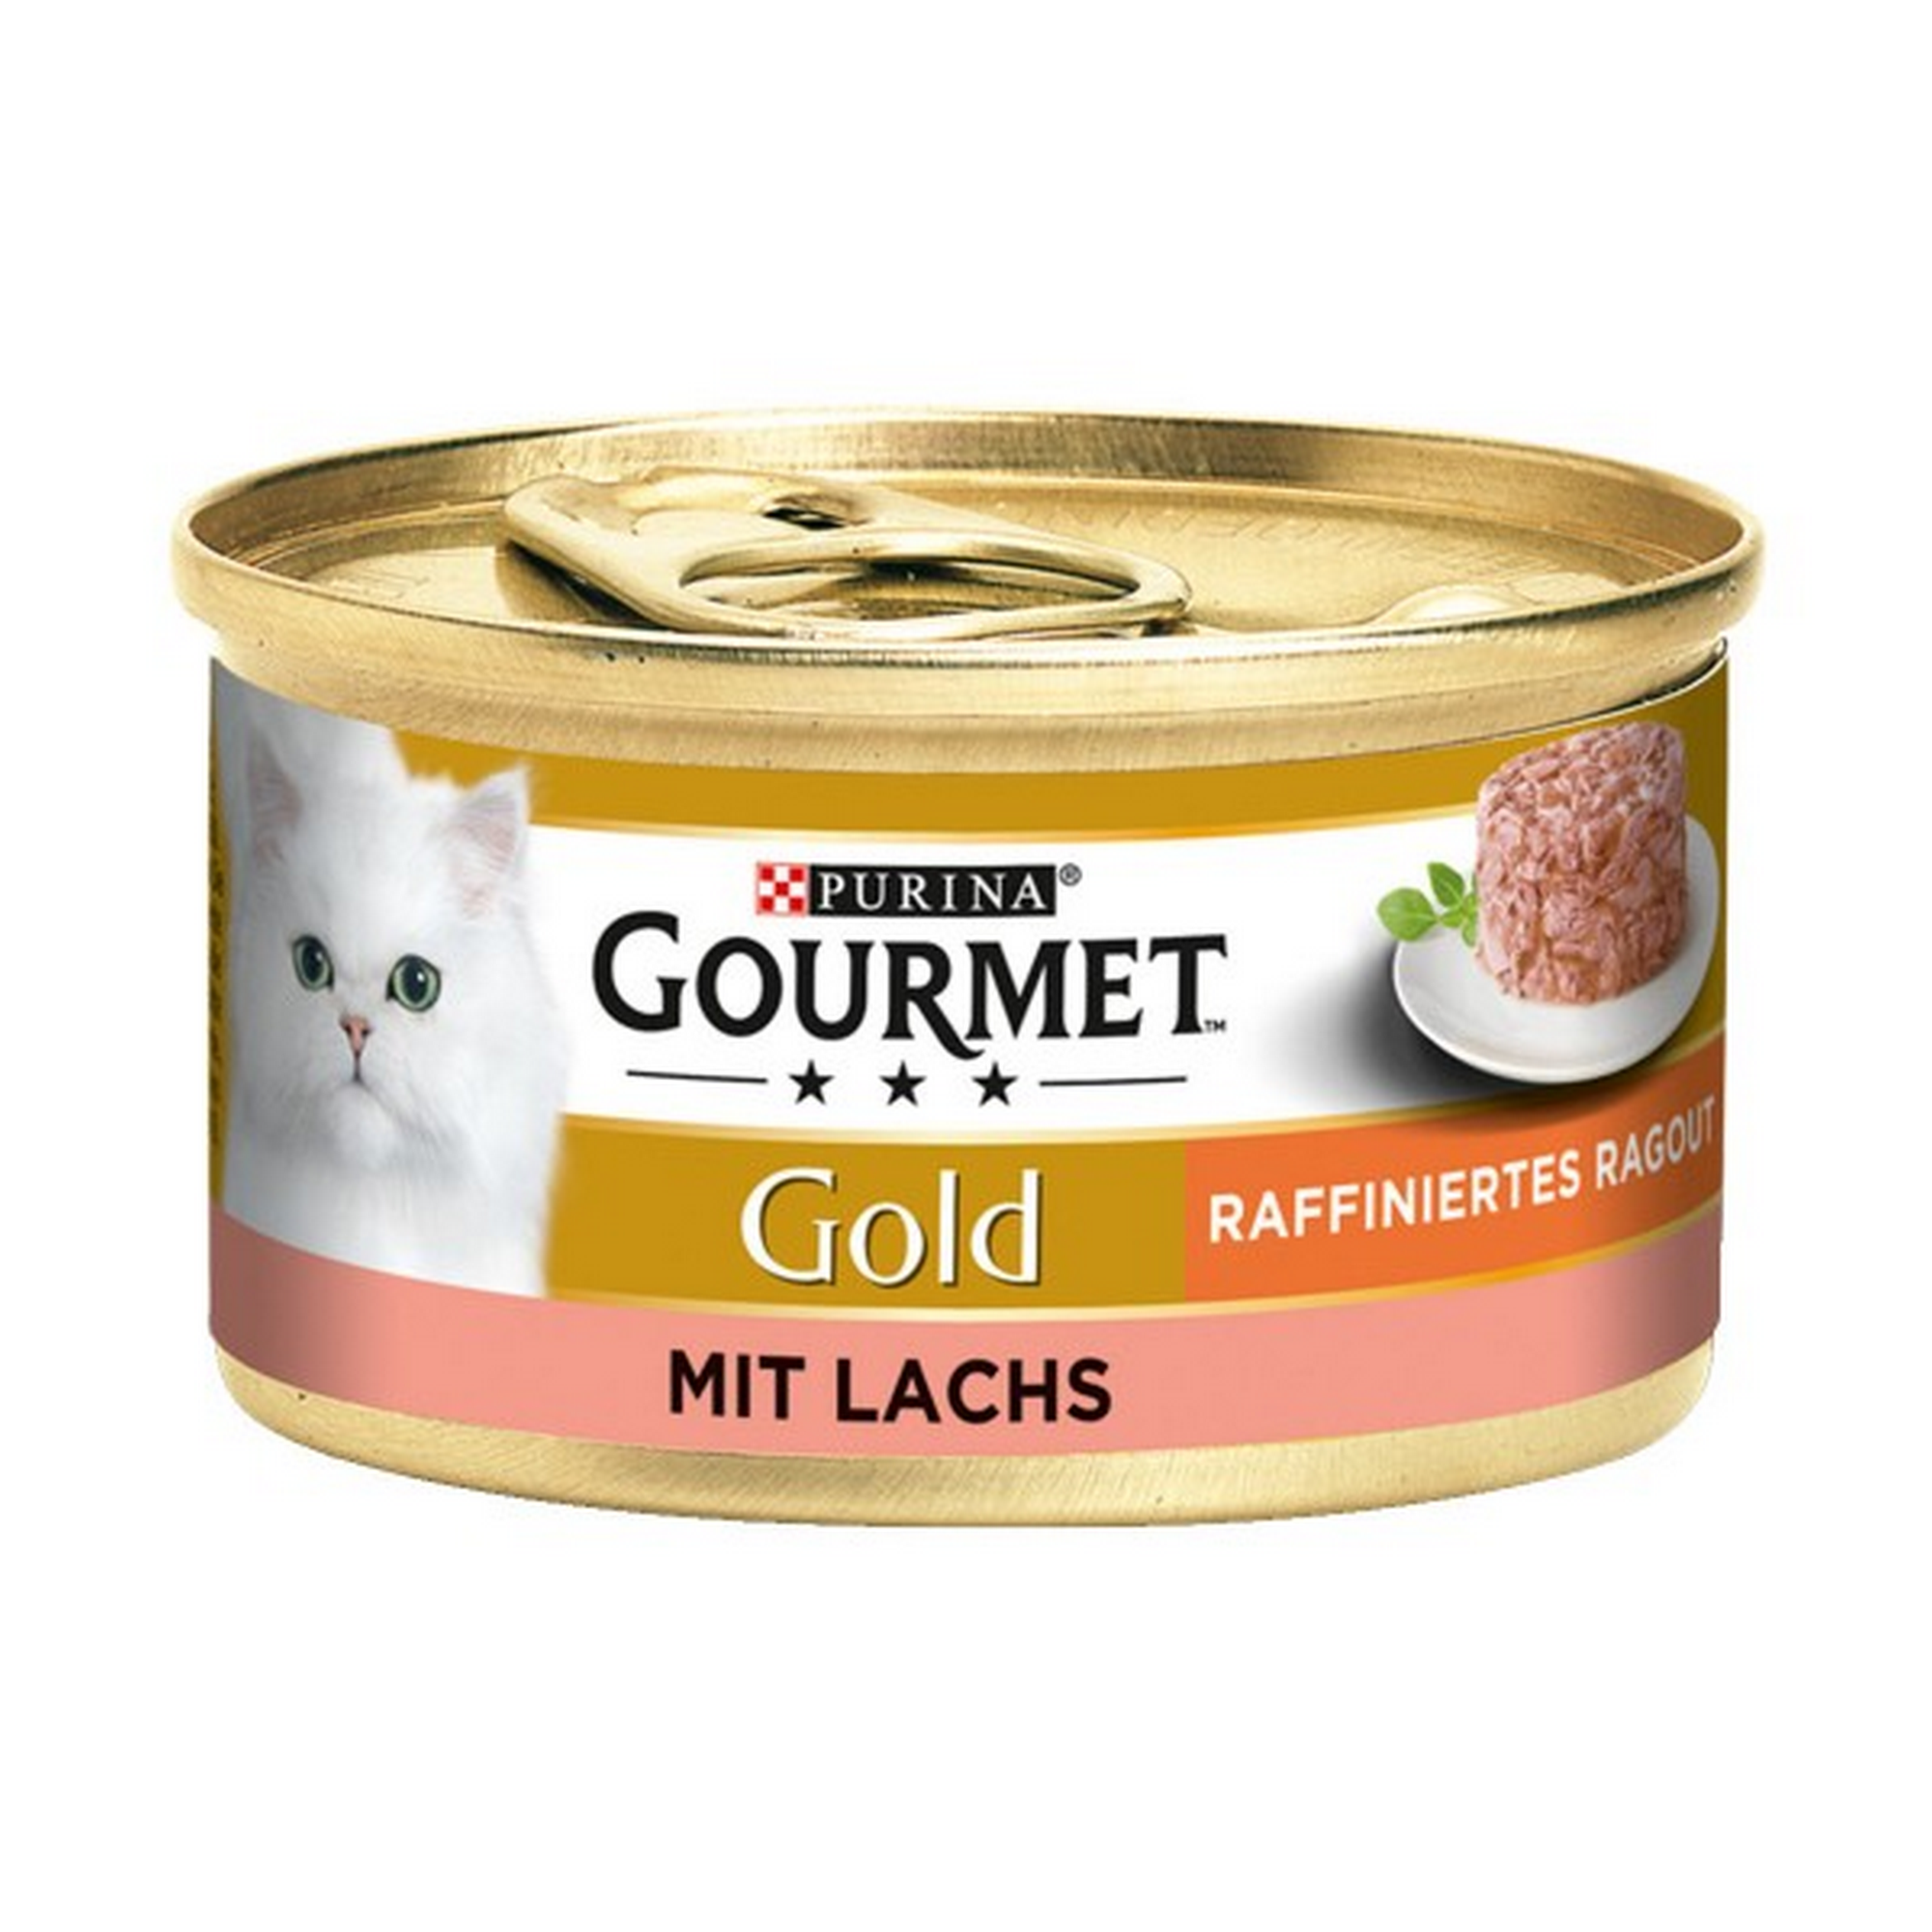 Katzennassfutter 'Gold' raffiniertes Ragout mit Lachs 85 g + product picture